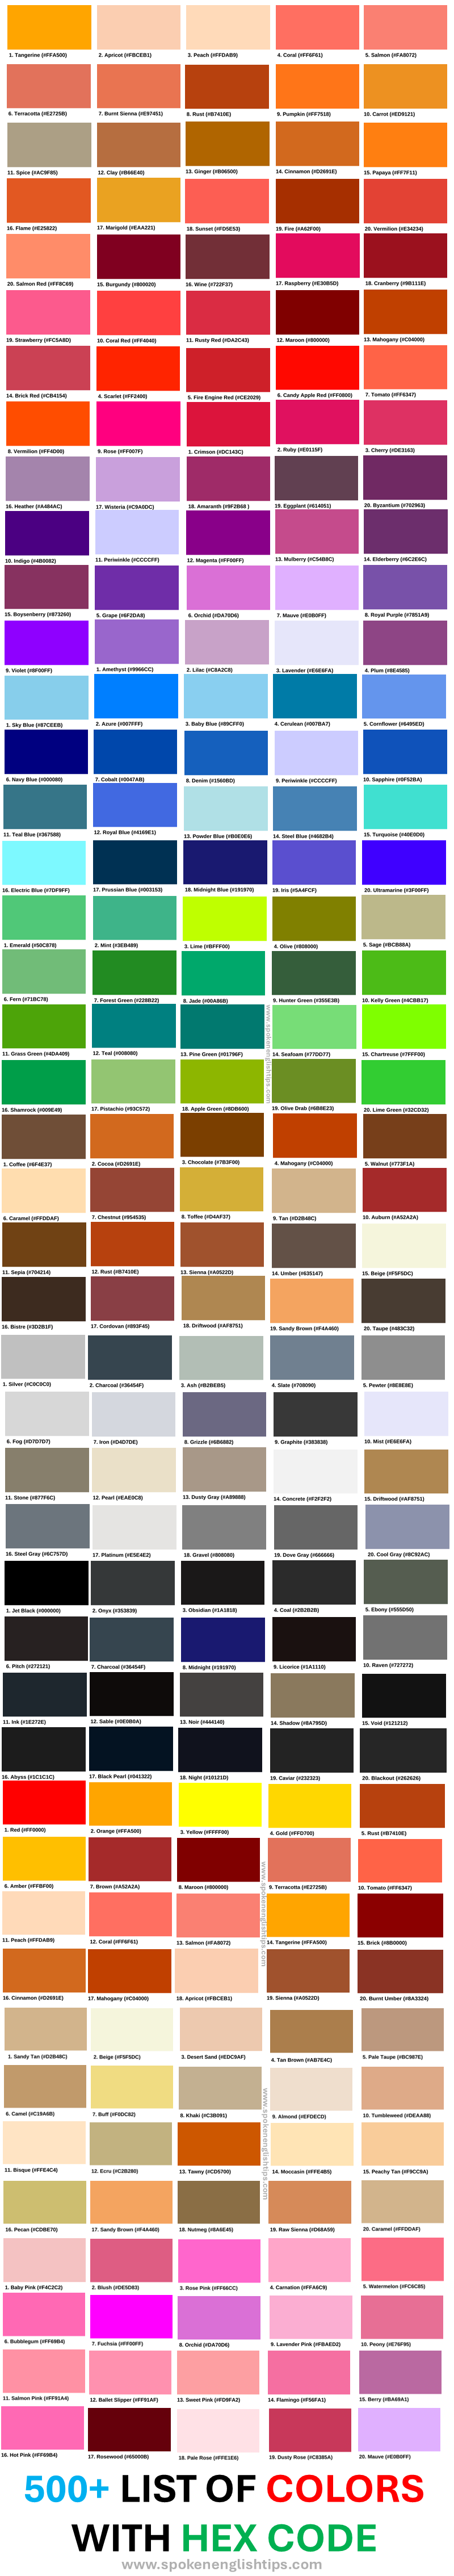 list of colors chart